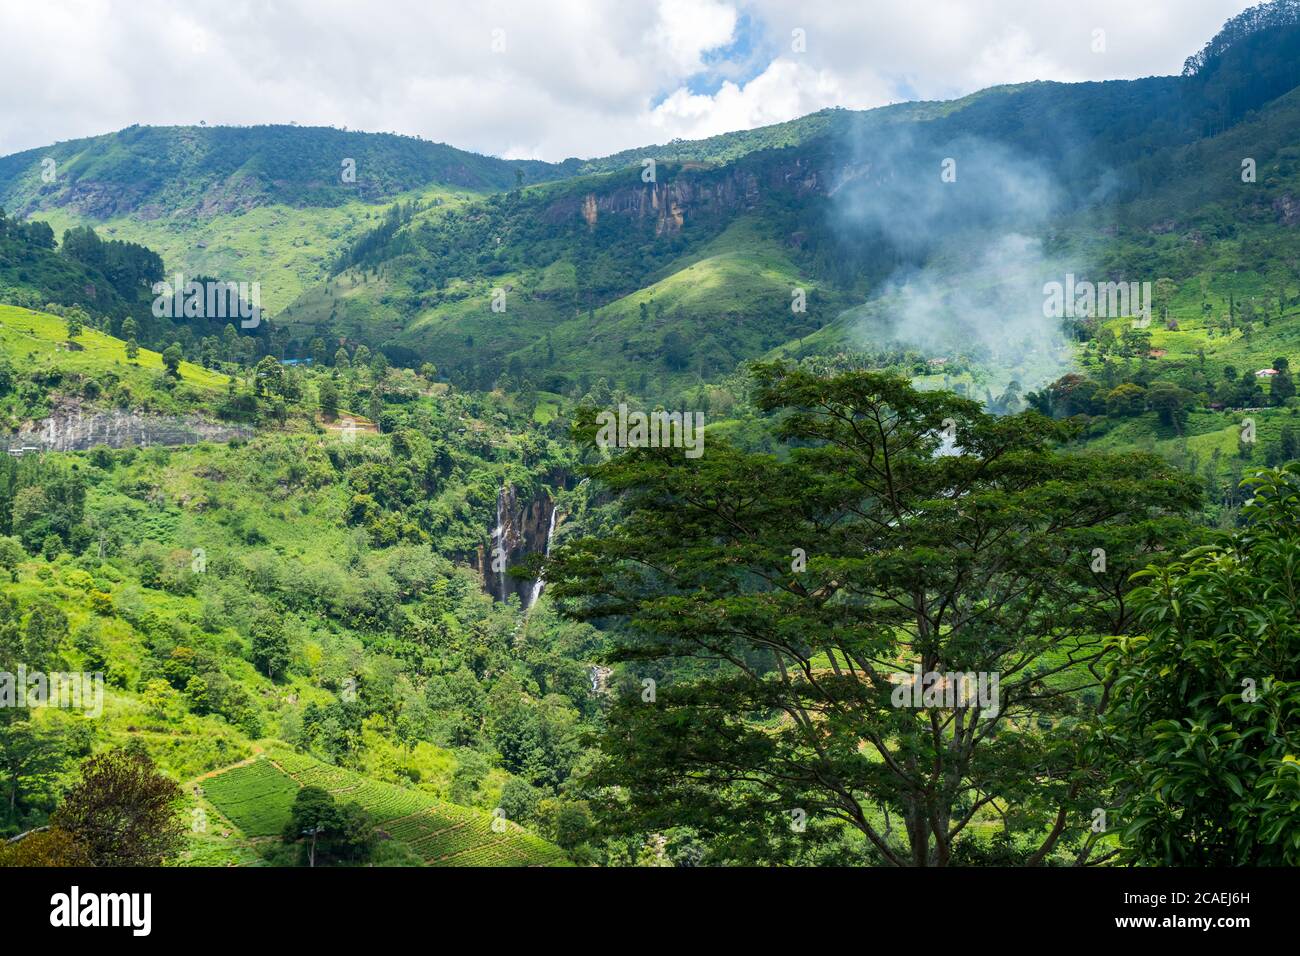 Erstaunliche Landschaft von Sri Lanka. Wasserfall in den Bergen und Teeplantage. Rauch hinter Bäumen. Stockfoto